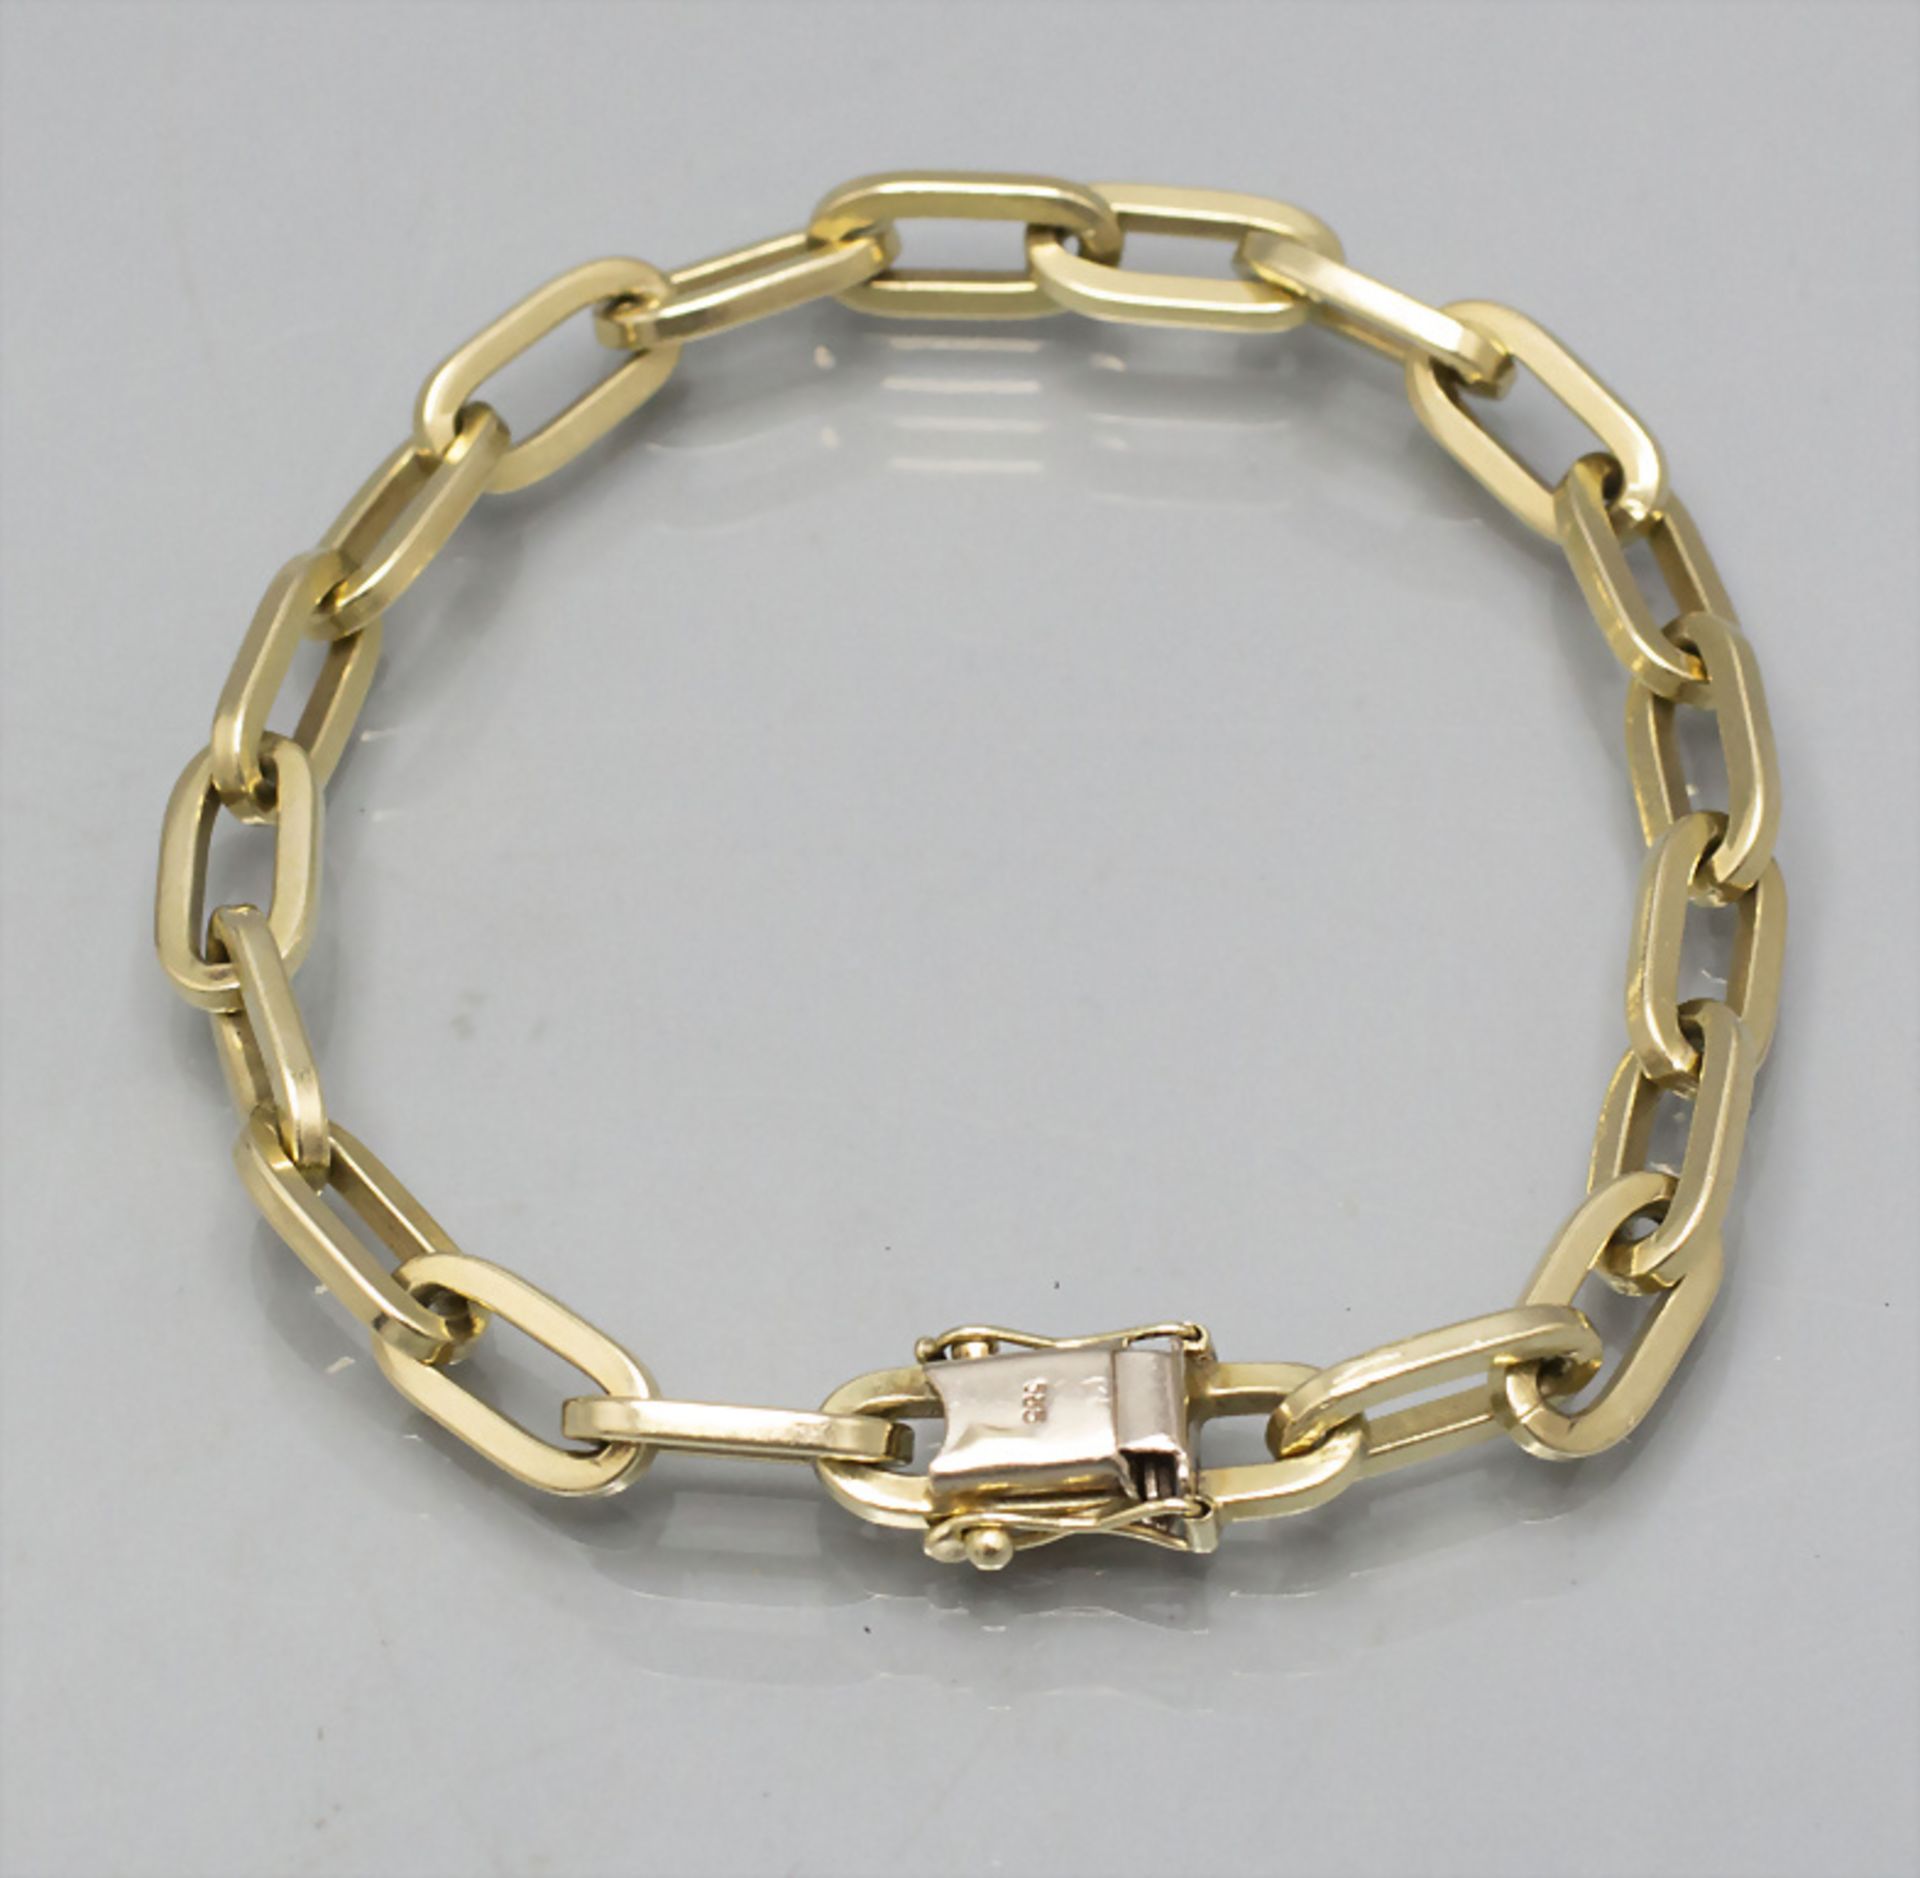 Goldarmband / A 14 ct gold bracelet